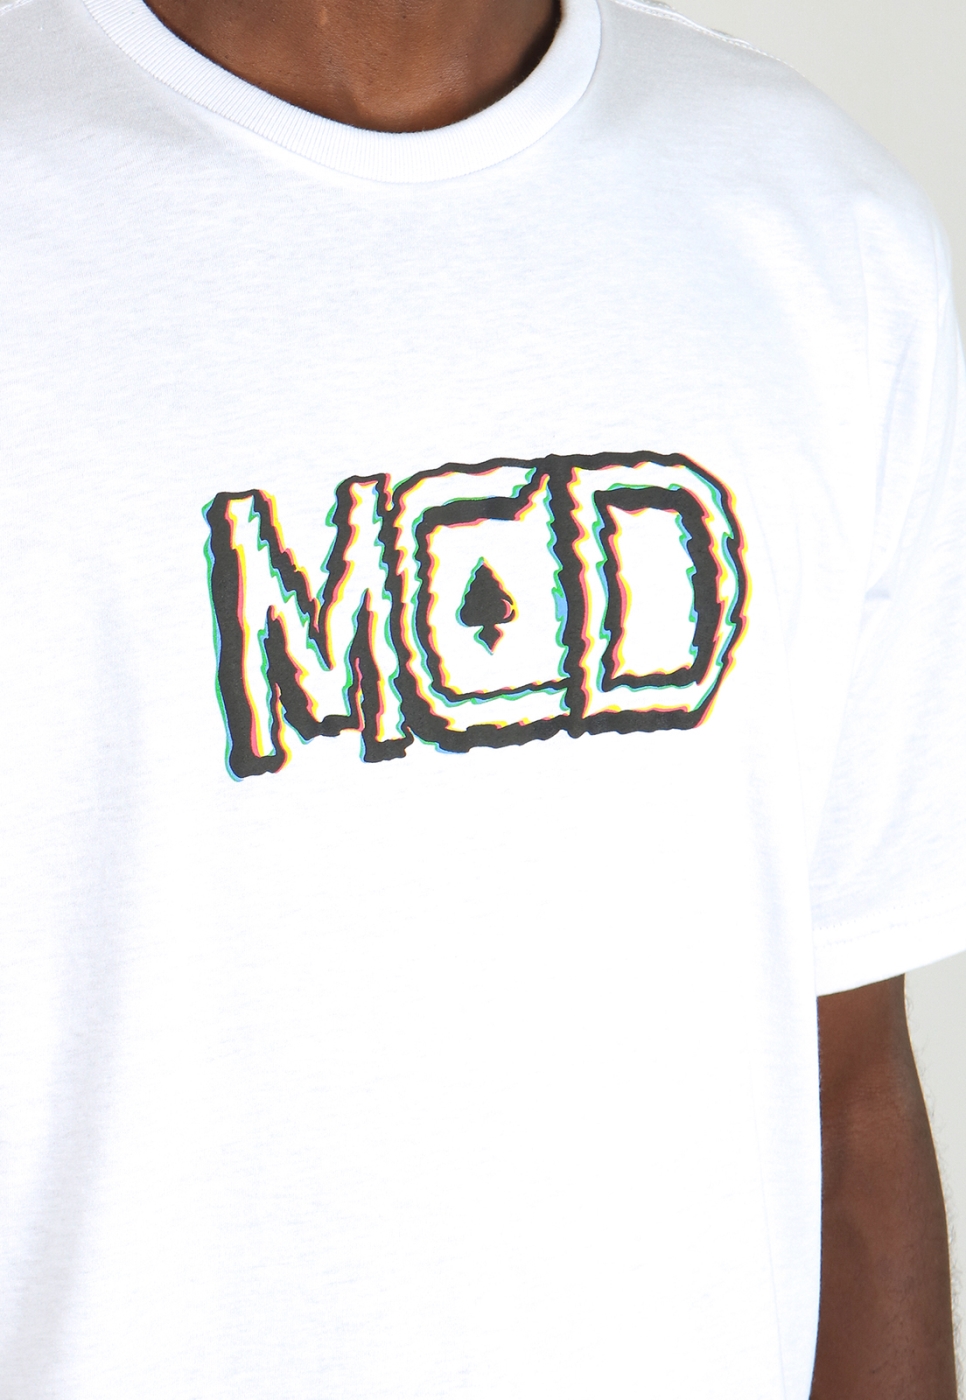 T-shirt Regular Ondulação MCD